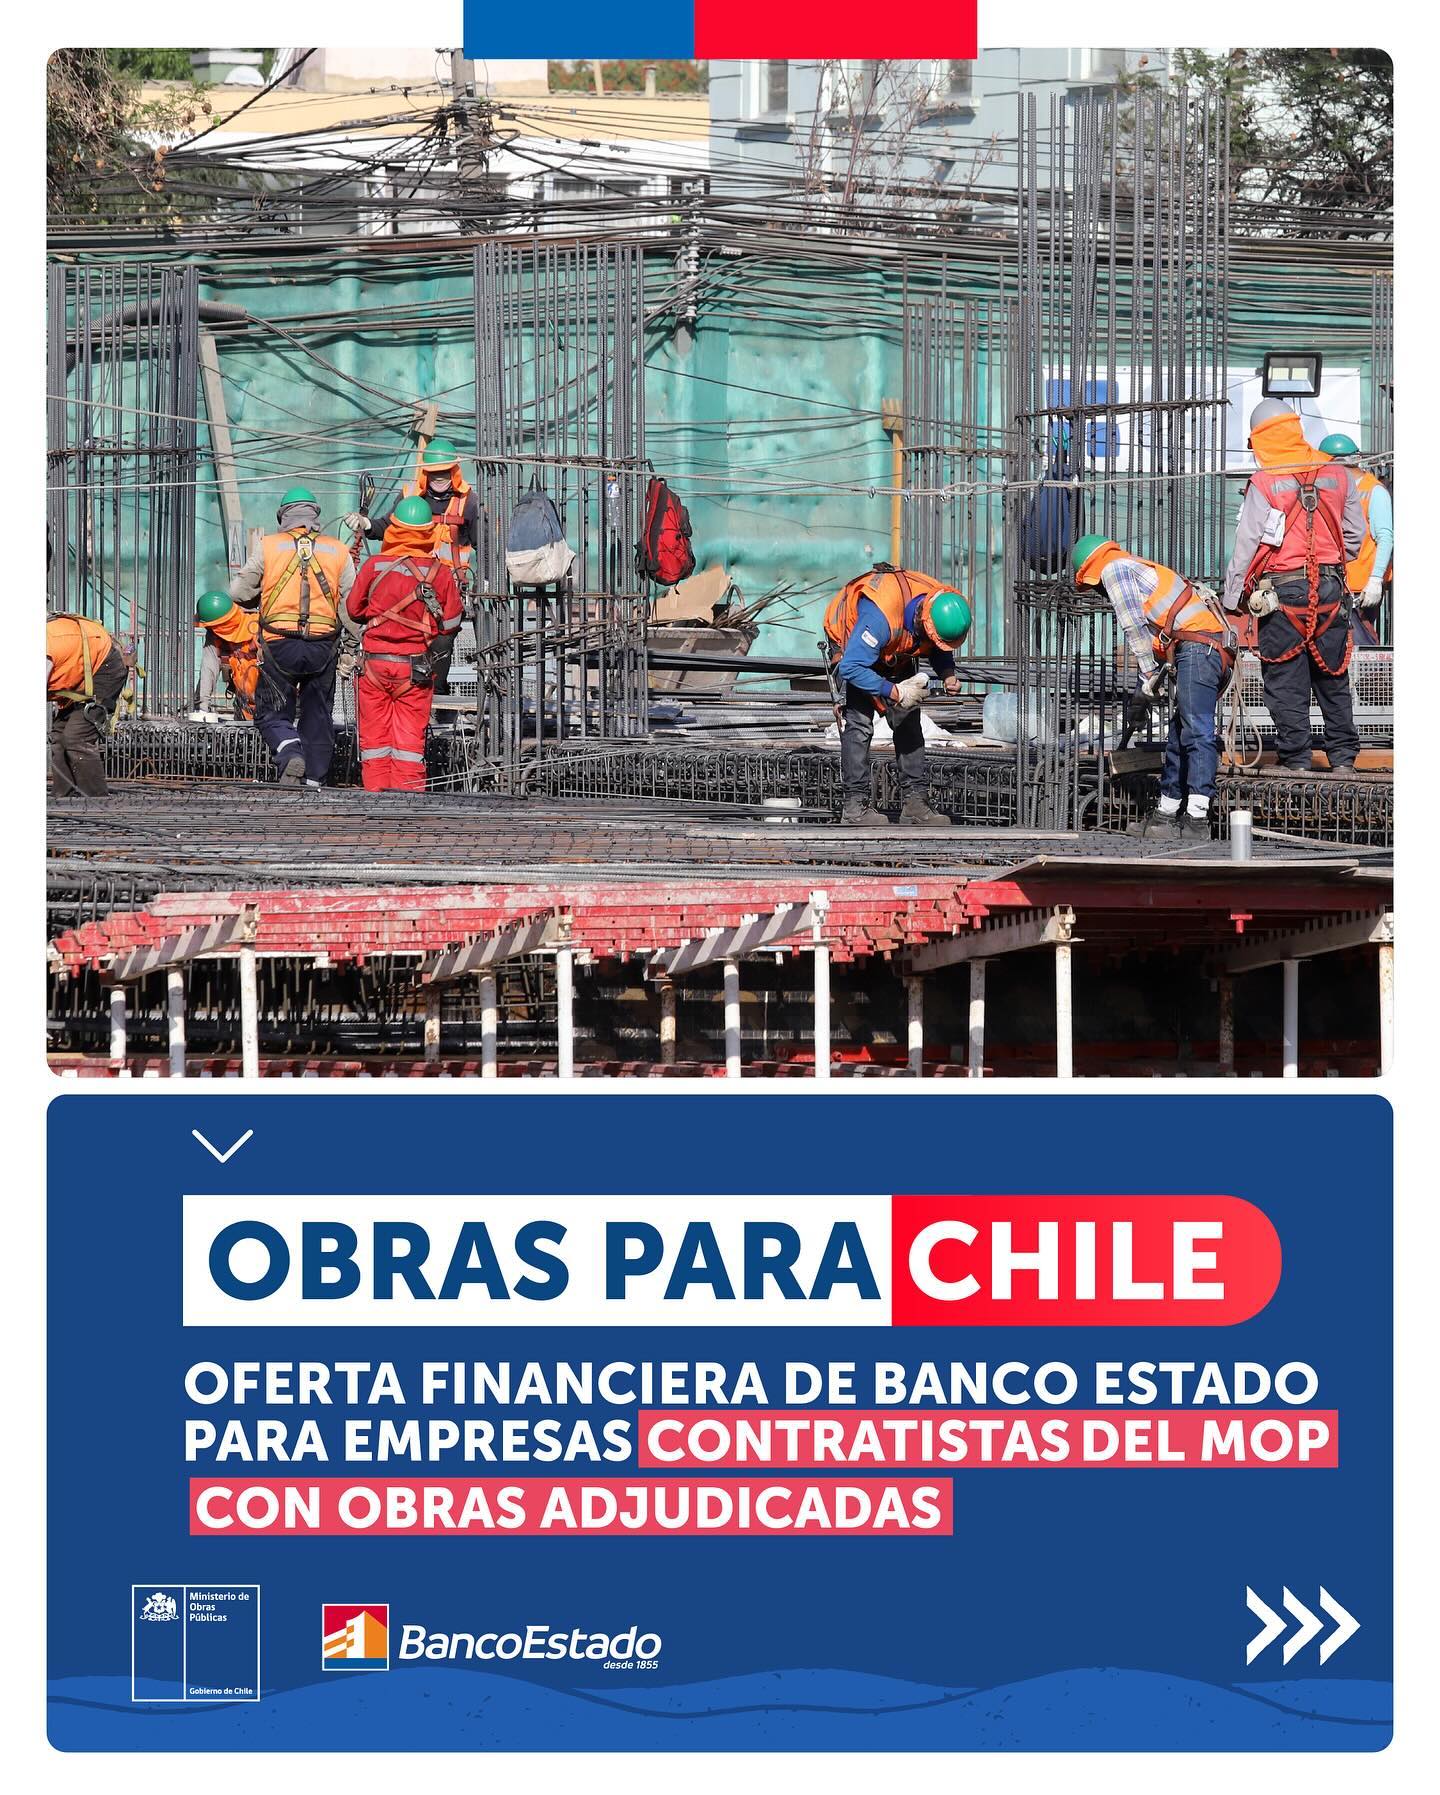 Obras para Chile | Banco Estado abre línea de crédito para pequeñas y medianas empresas constructoras contratistas del MOP